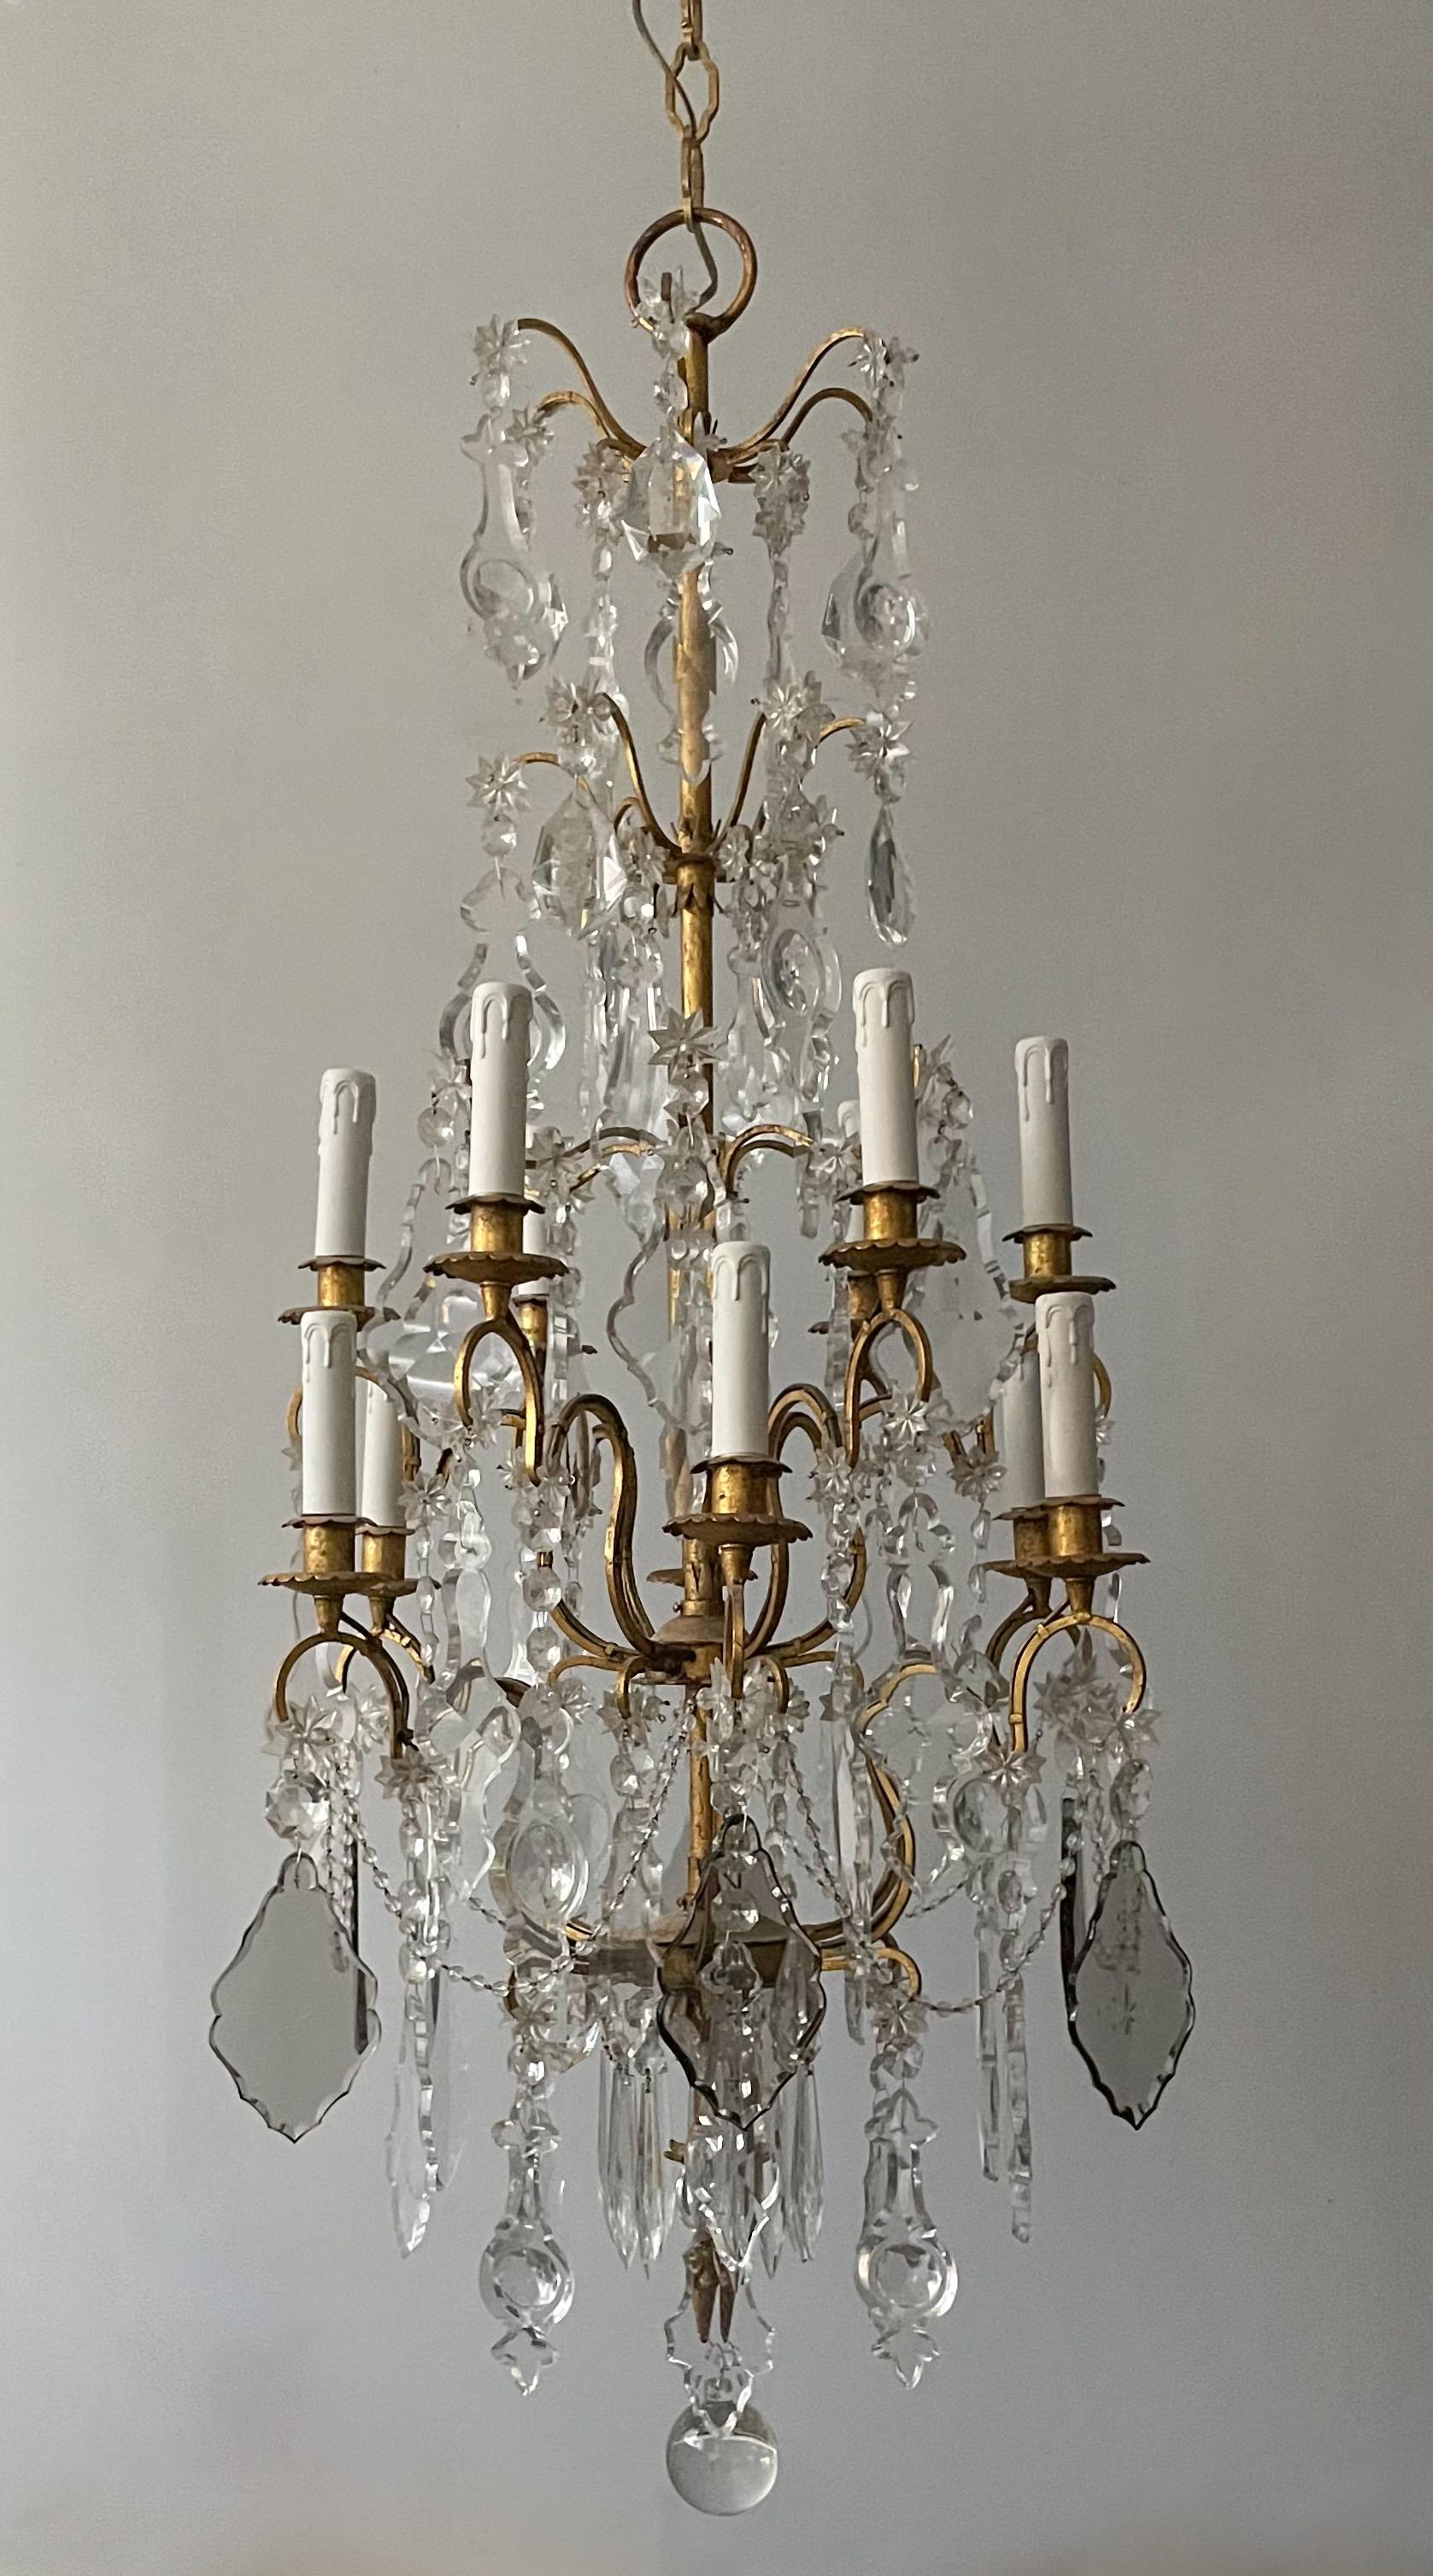 Superbe lustre italien des années 1940 en fer doré et cristal de style néoclassique.

Le lustre se compose d'un cadre en fer doré à deux niveaux, décoré d'une riche abondance de pendentifs français aux formes harmonieuses. 

Le lustre est câblé